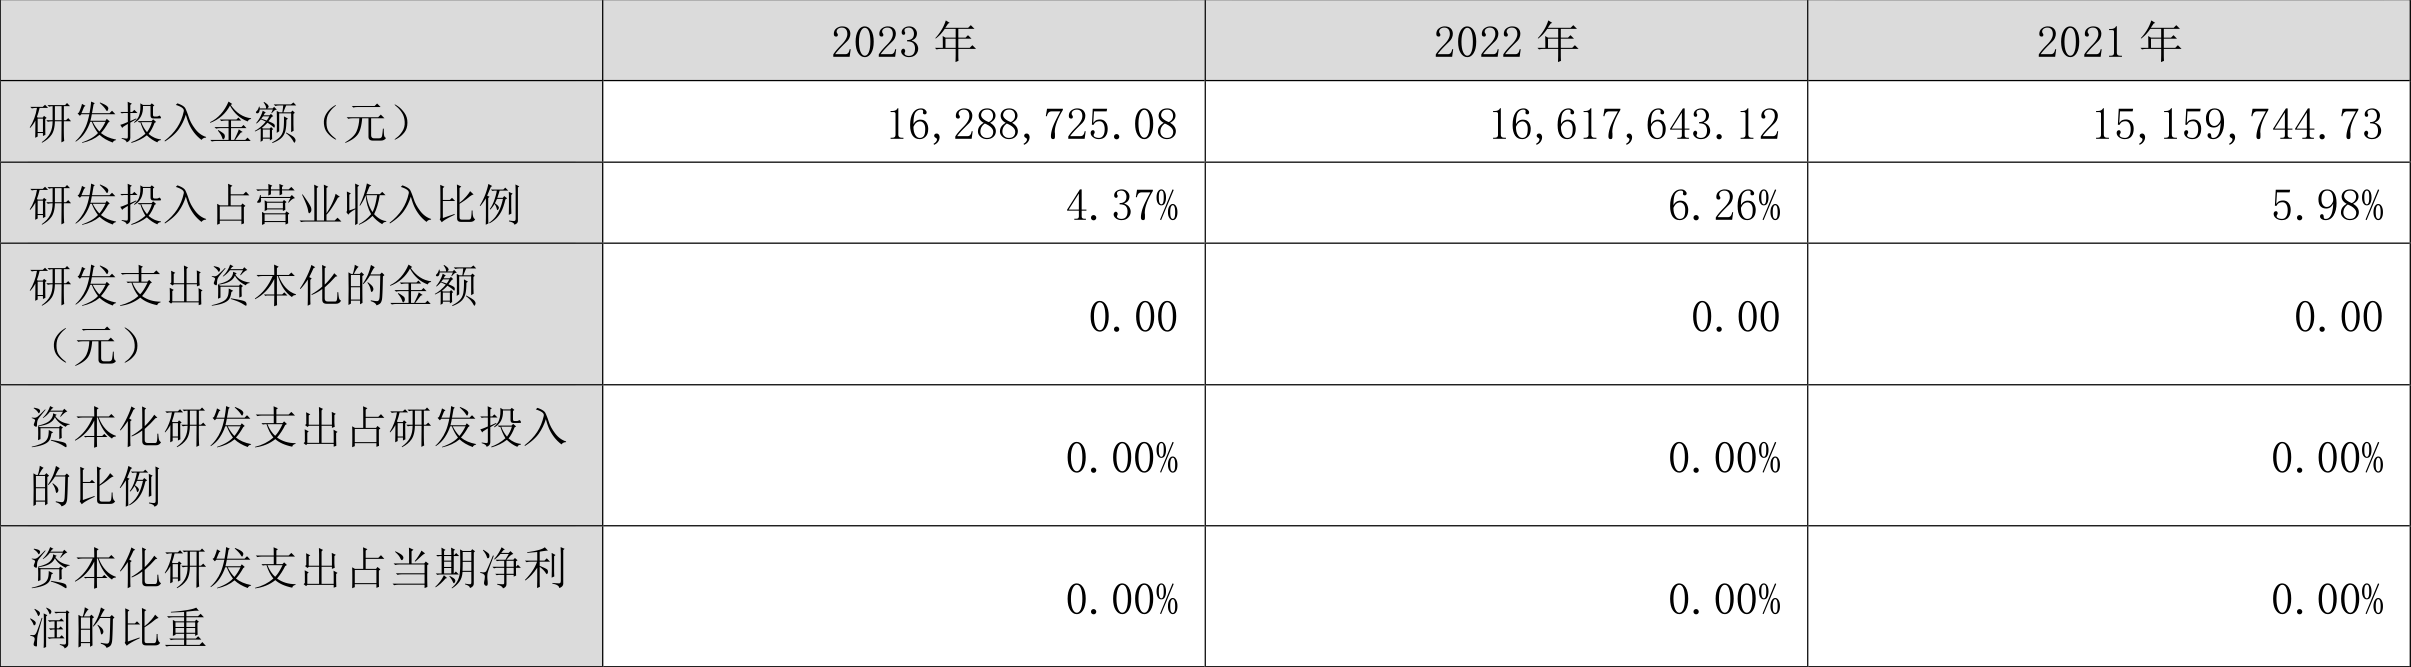 国安达：2023年净利润同比增长155.36% 拟10转4股派3元